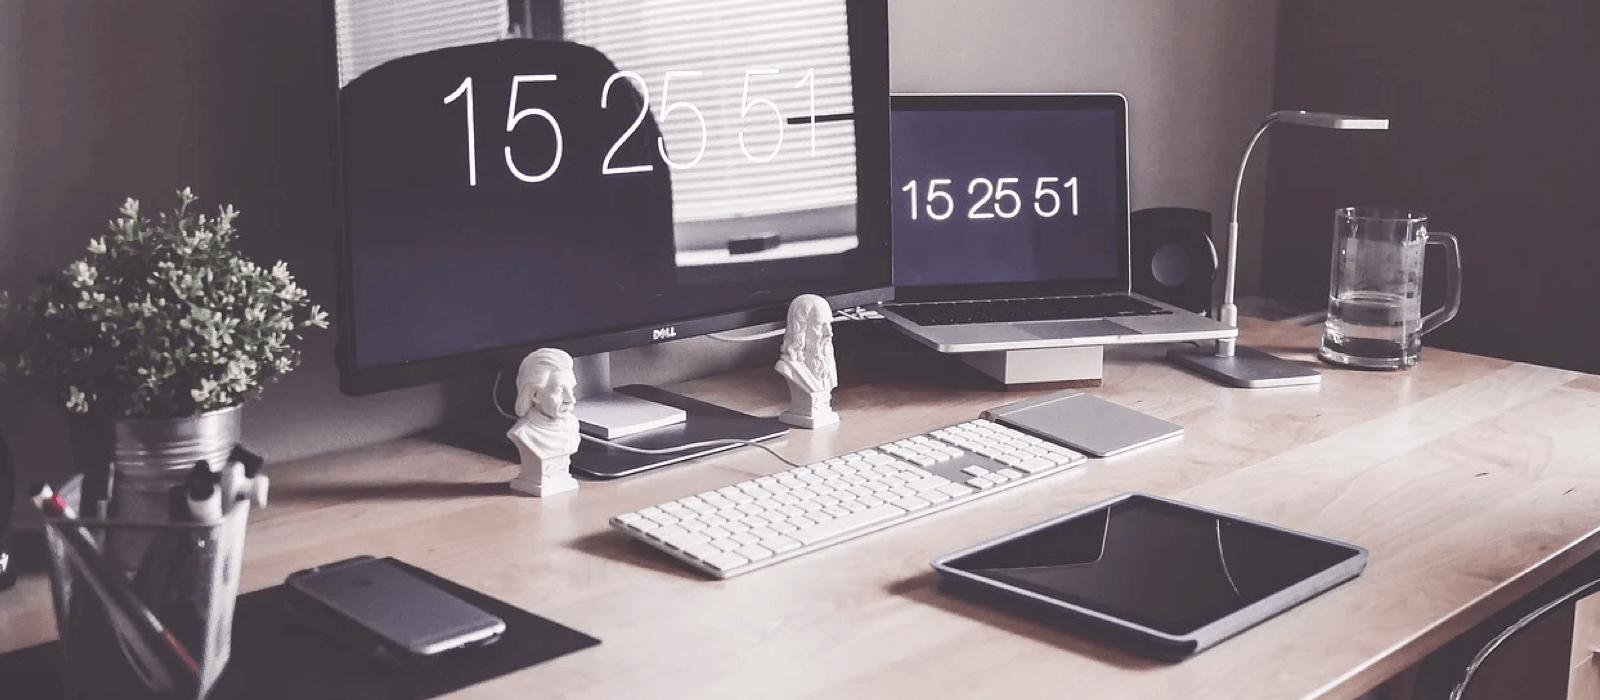 Babel Digital Workplace Renta4. Panorámica de un escritorio con múltiples dispositivos 